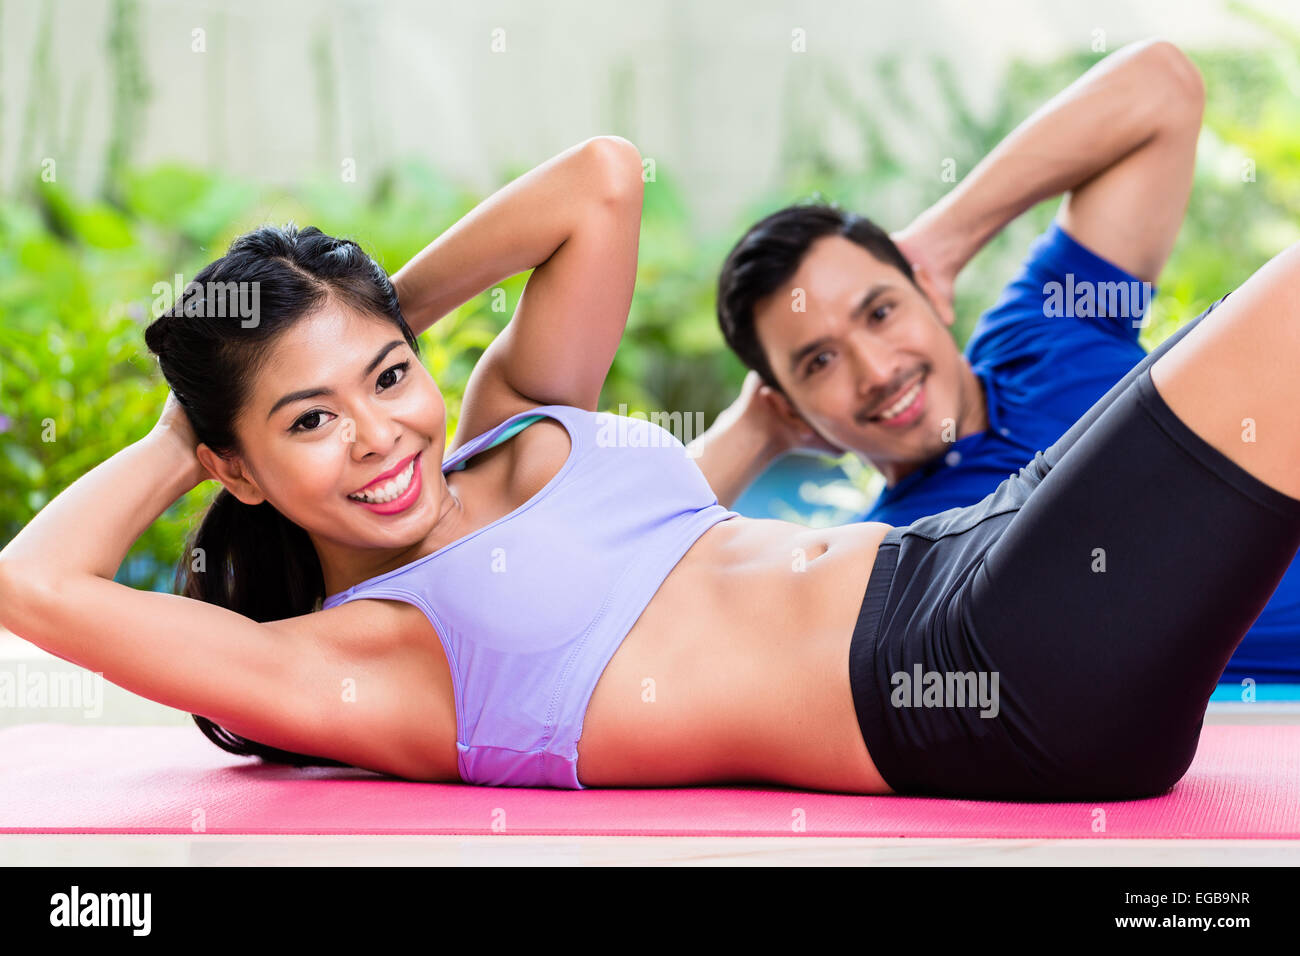 Asiatische Fitness paar, Mann und Frau, Sit-up in tropischen Heimat zu tun Stockfoto